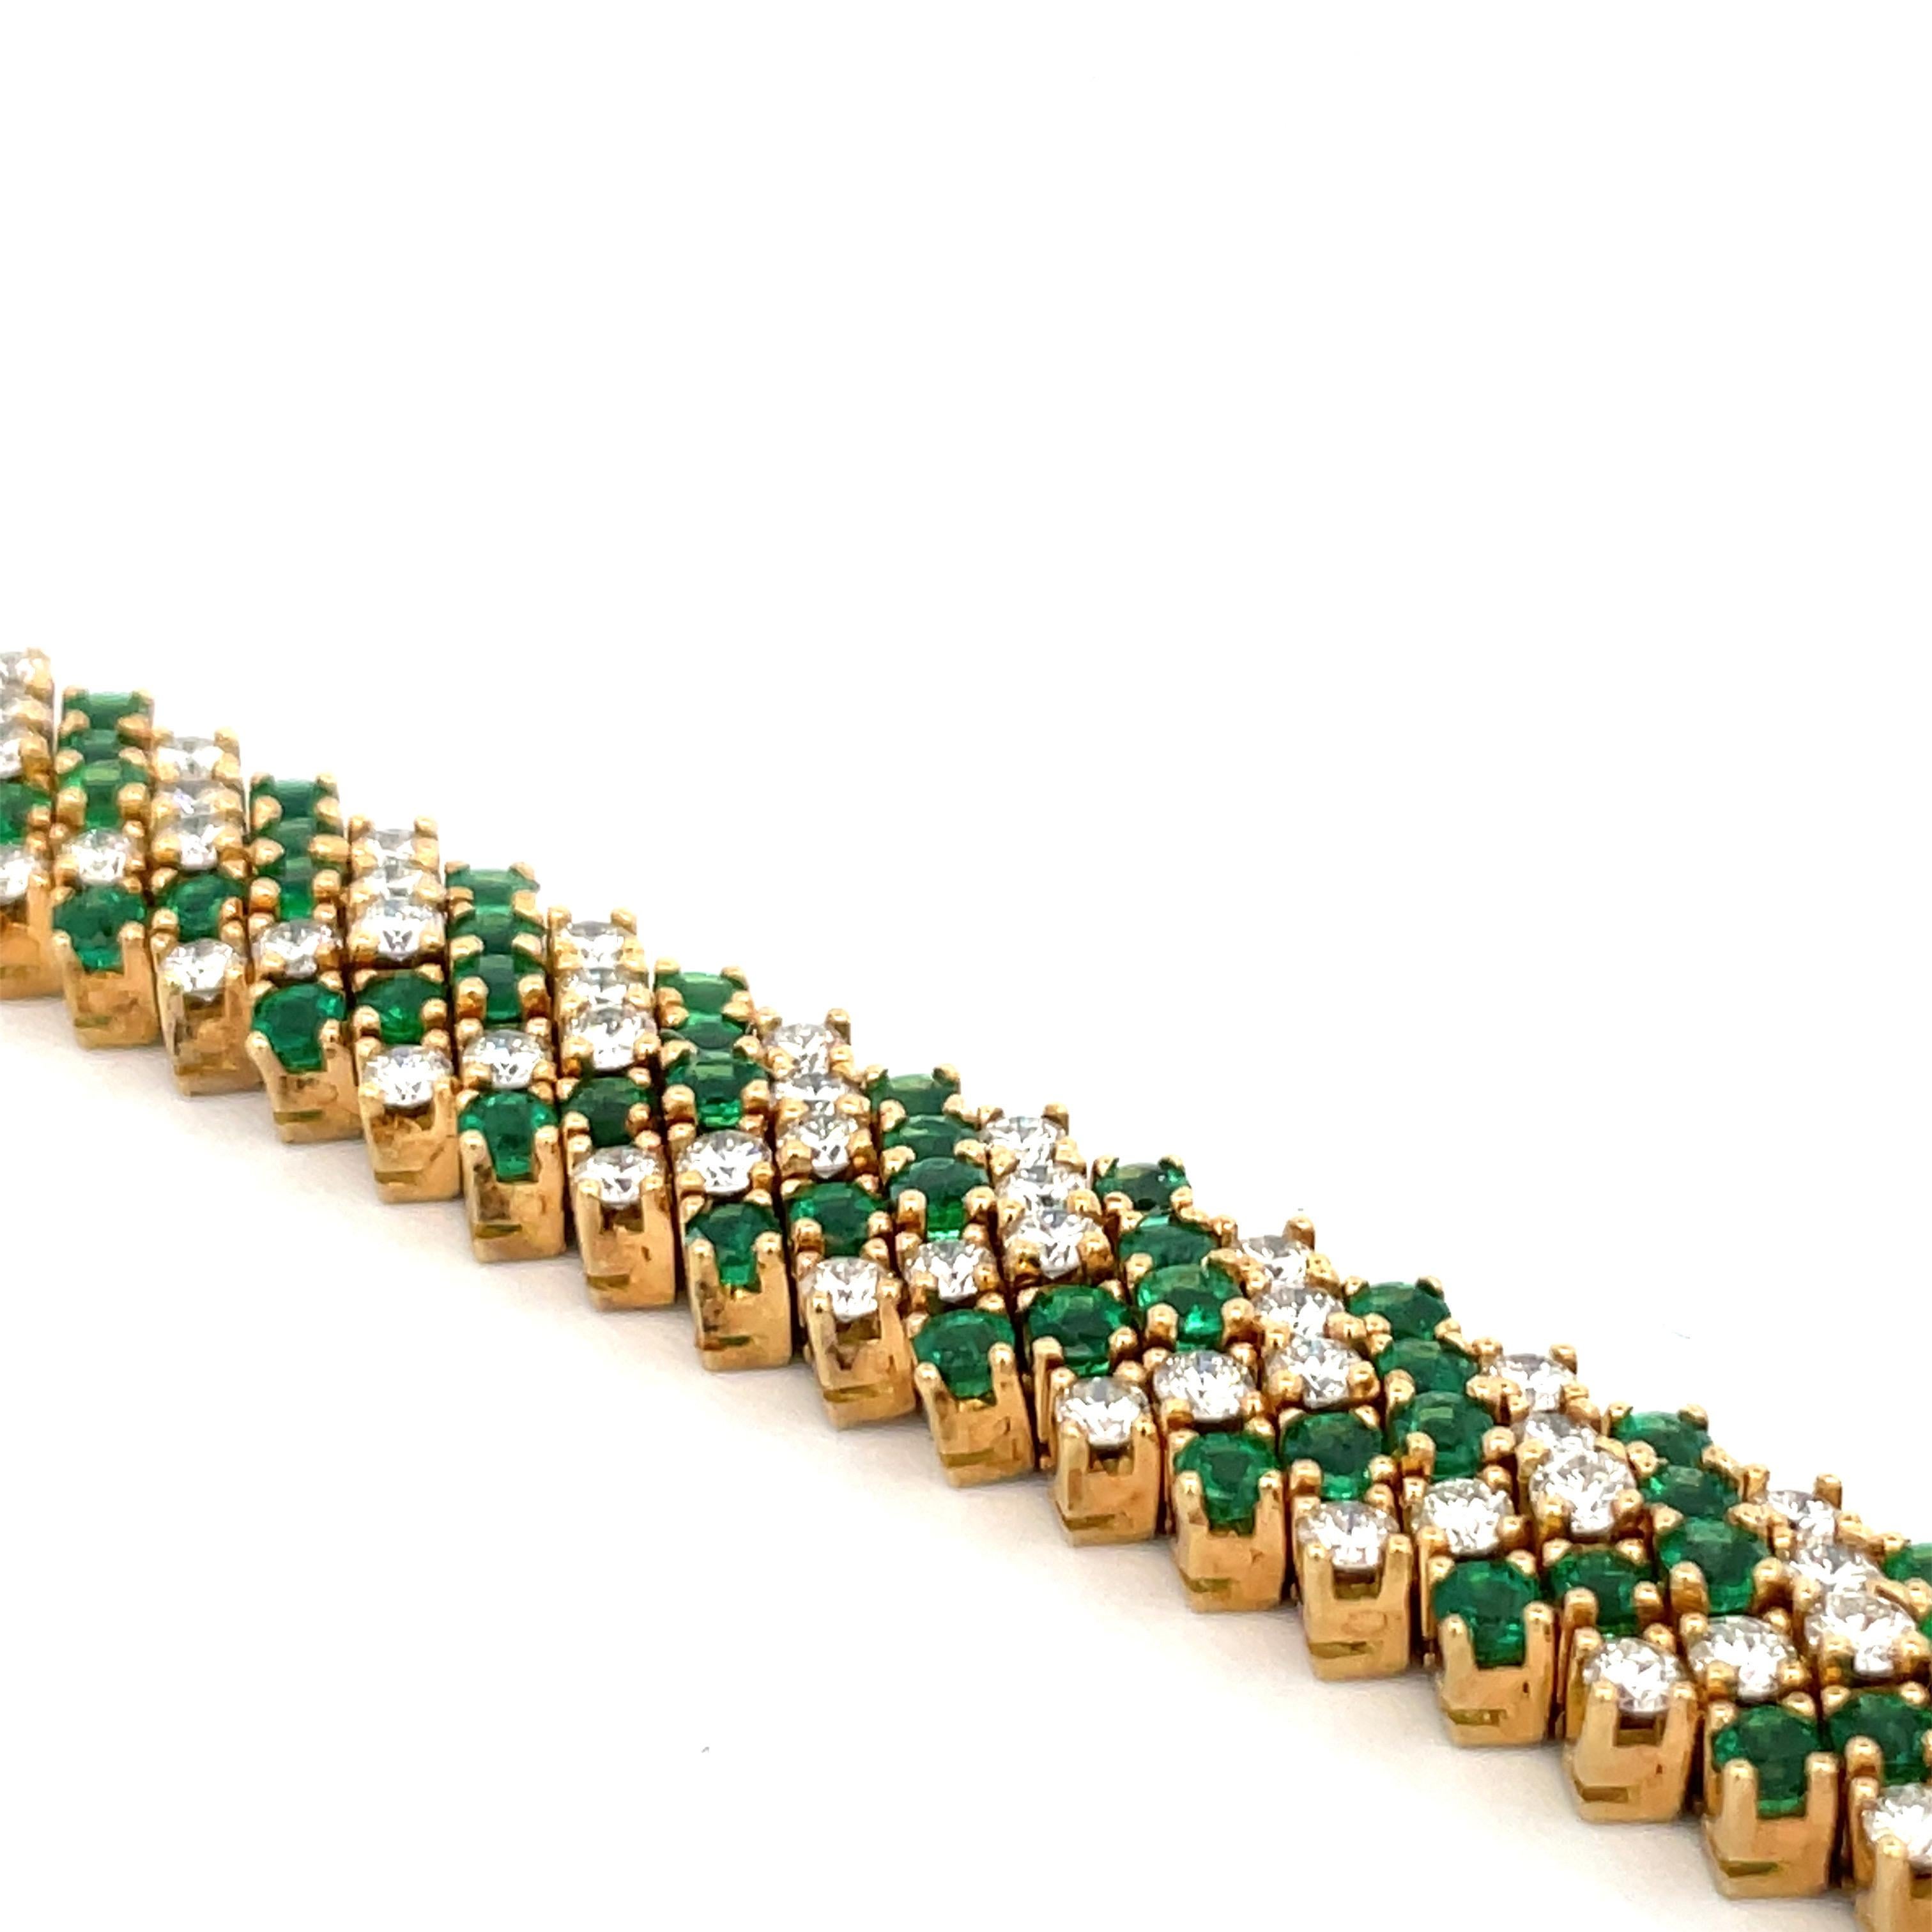 Armband aus 18 Karat Gelbgold mit Diamanten und grünen Smaragden in einem Chevron-Motiv. 
Grüner Smaragd - 6,50 Karat
Diamanten - 6,90 Karat